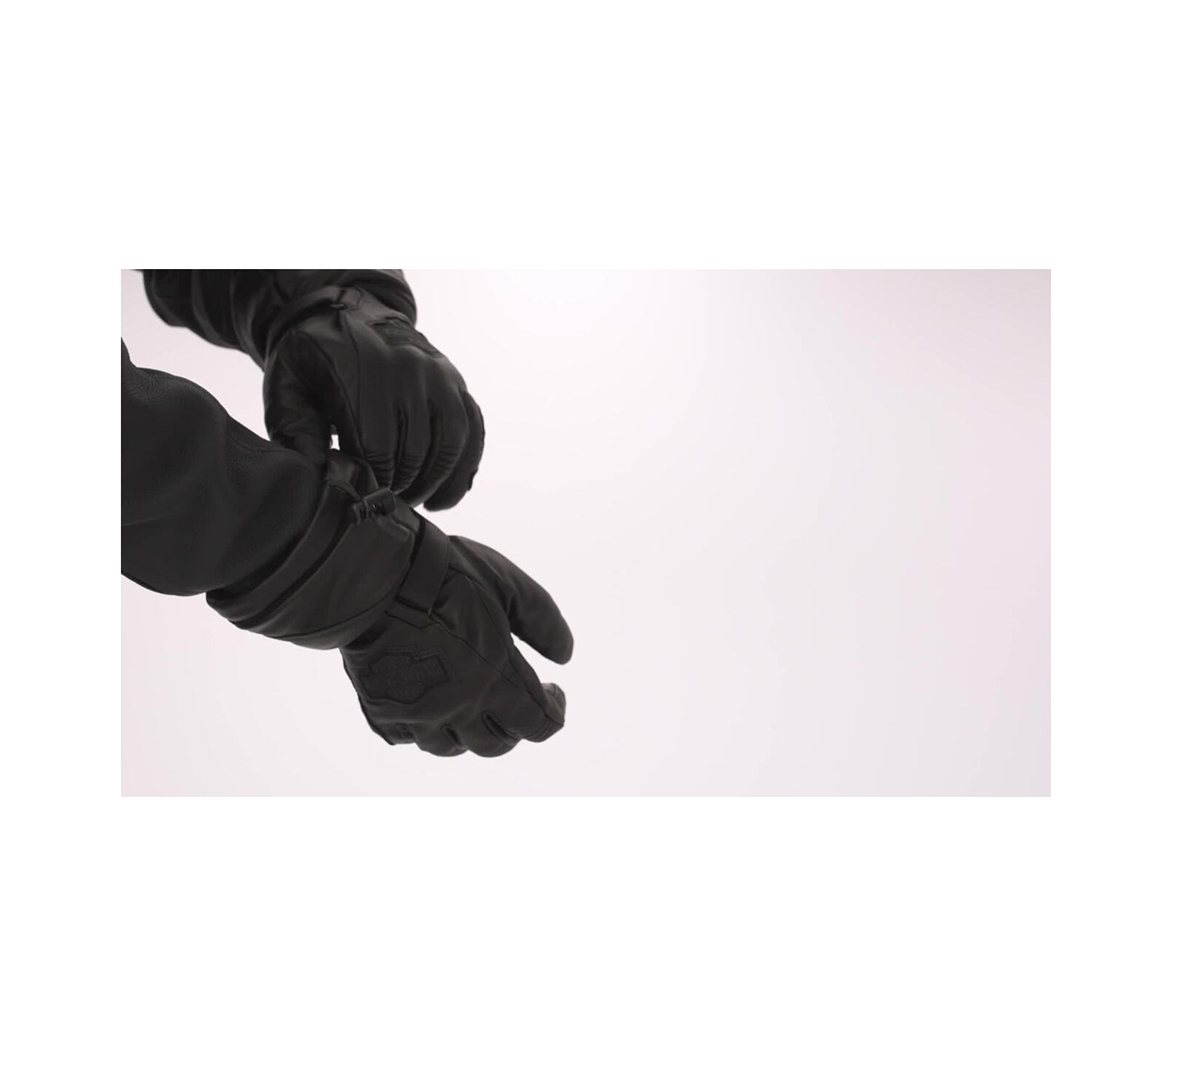 Men's Circuit II Waterproof Leather Gauntlet Gloves